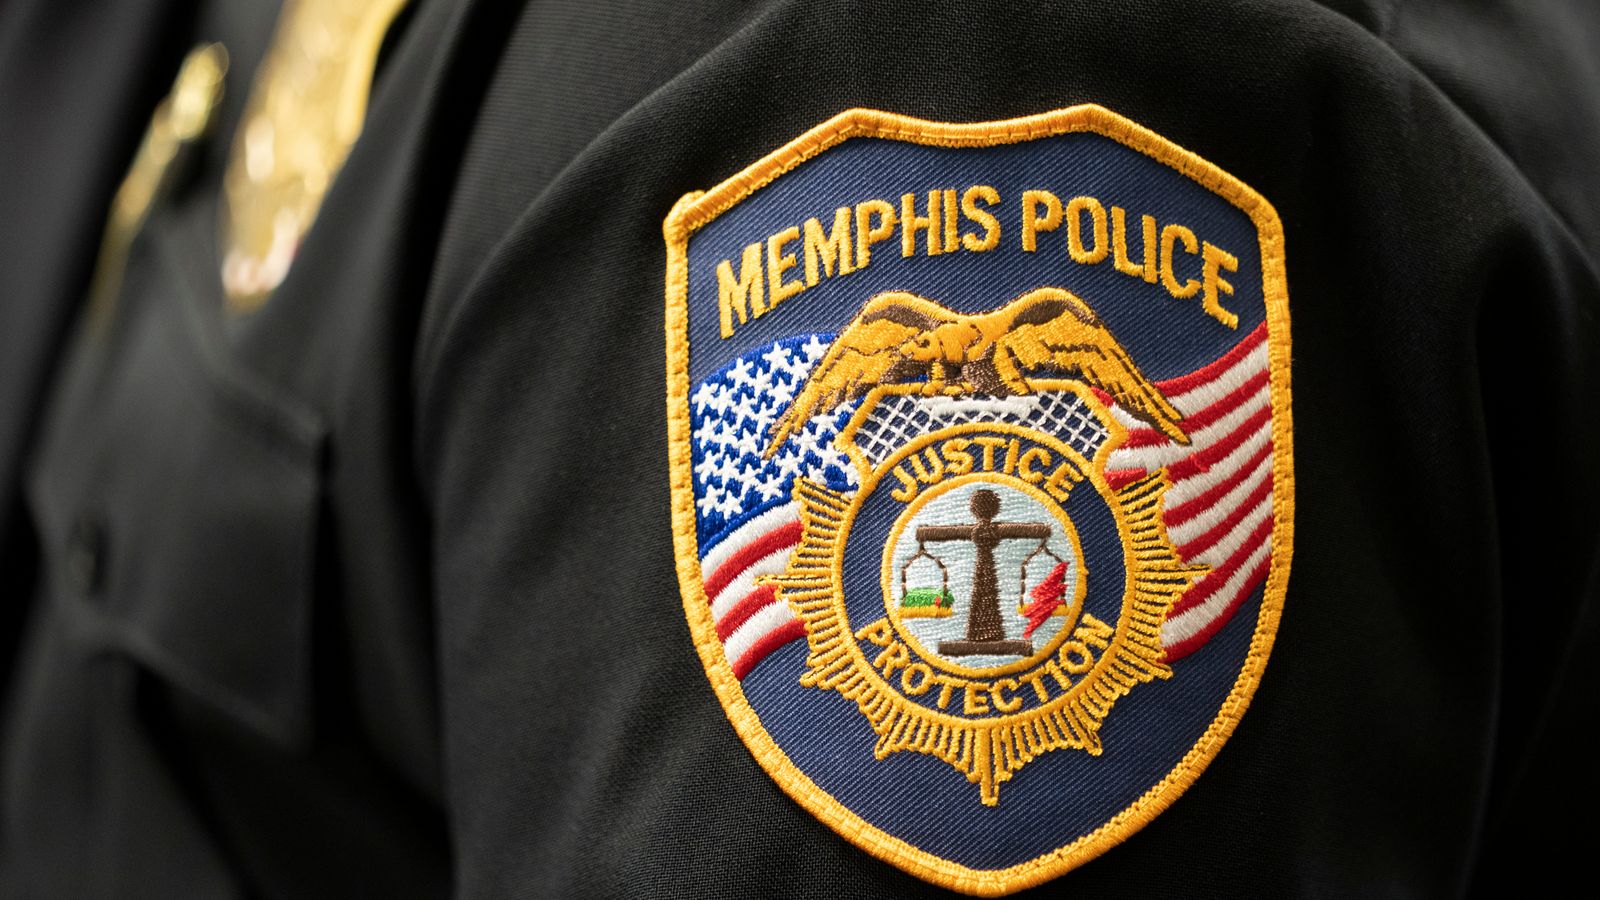 Deux morts et six blessés dans une fusillade lors d’une fête à Memphis |  Actualités américaines